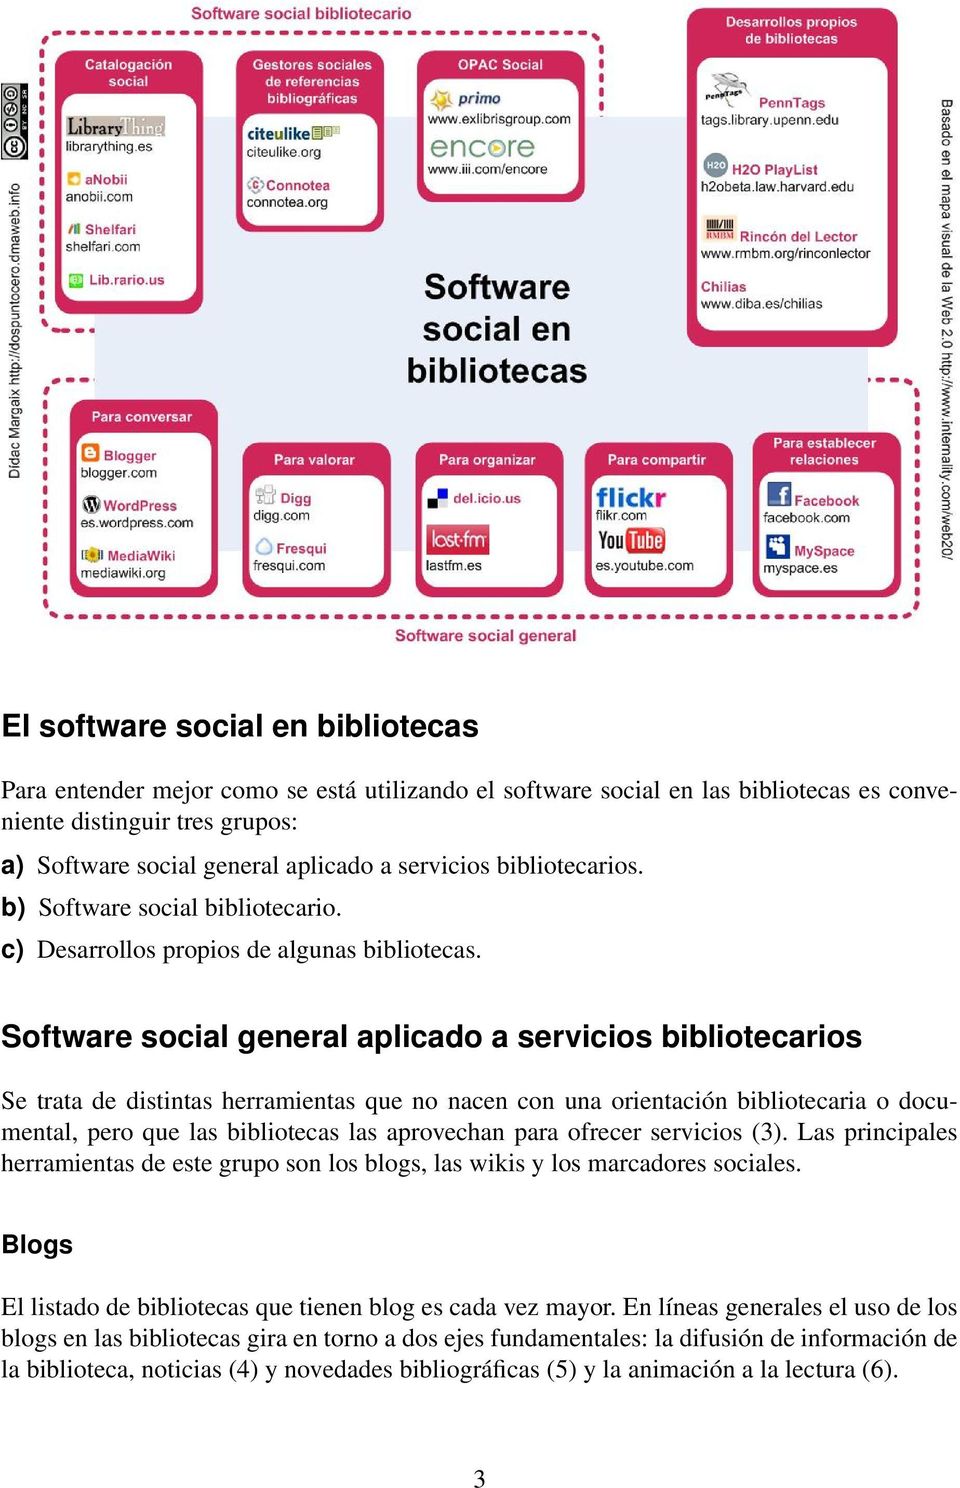 Software social general aplicado a servicios bibliotecarios Se trata de distintas herramientas que no nacen con una orientación bibliotecaria o documental, pero que las bibliotecas las aprovechan